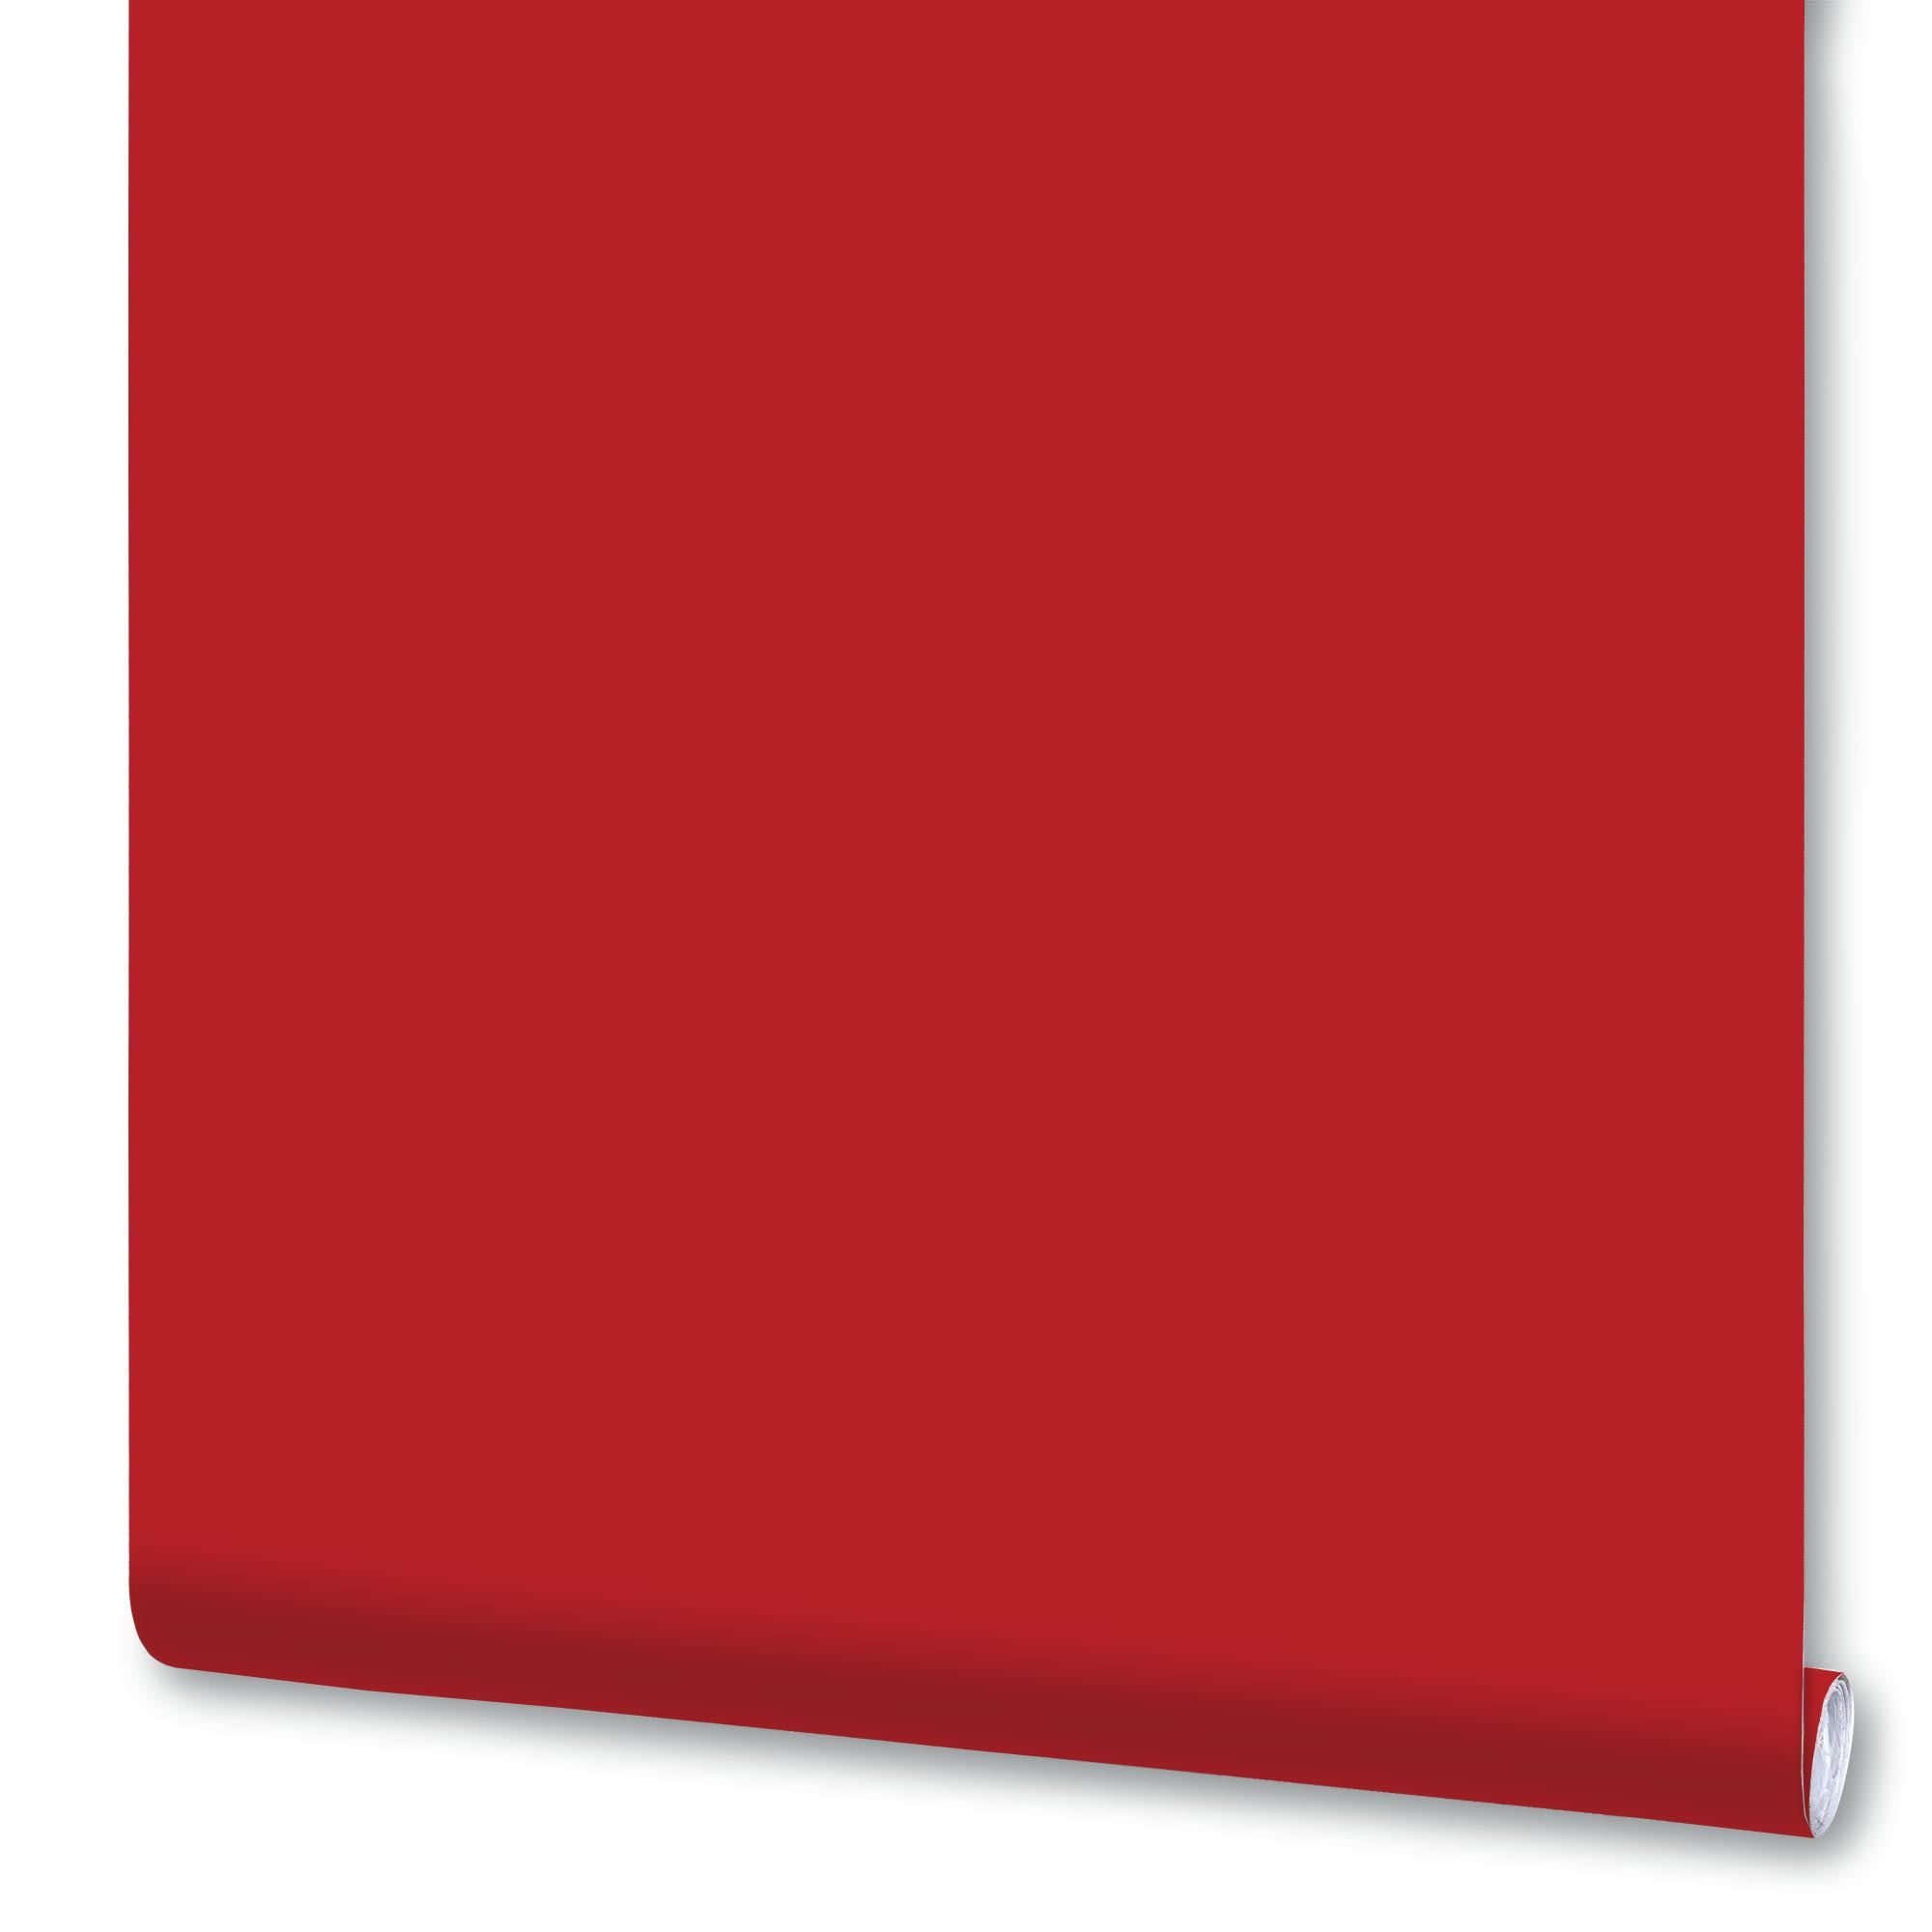 Плёнка Deluxe самоклеящаяся, 0,45x2 м, рубиново-красная, глянцевая, 7011В, 1 рулон